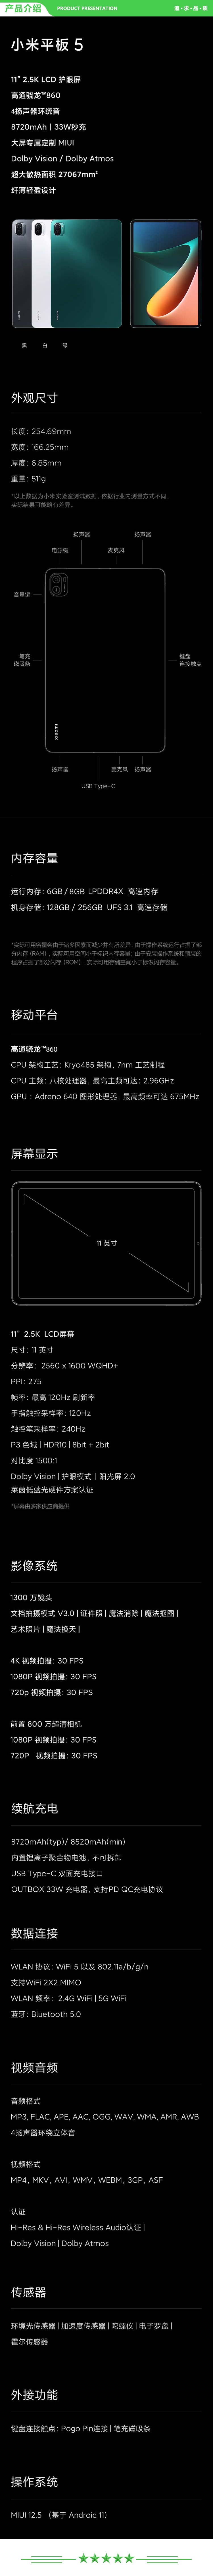 小米 xiaomi 平板5 平板电脑（11英寸2.5K高清 120Hz 骁龙860 8G+256GB 33W快充 杜比影音娱乐办公 白色）+ 键盘套装.jpg